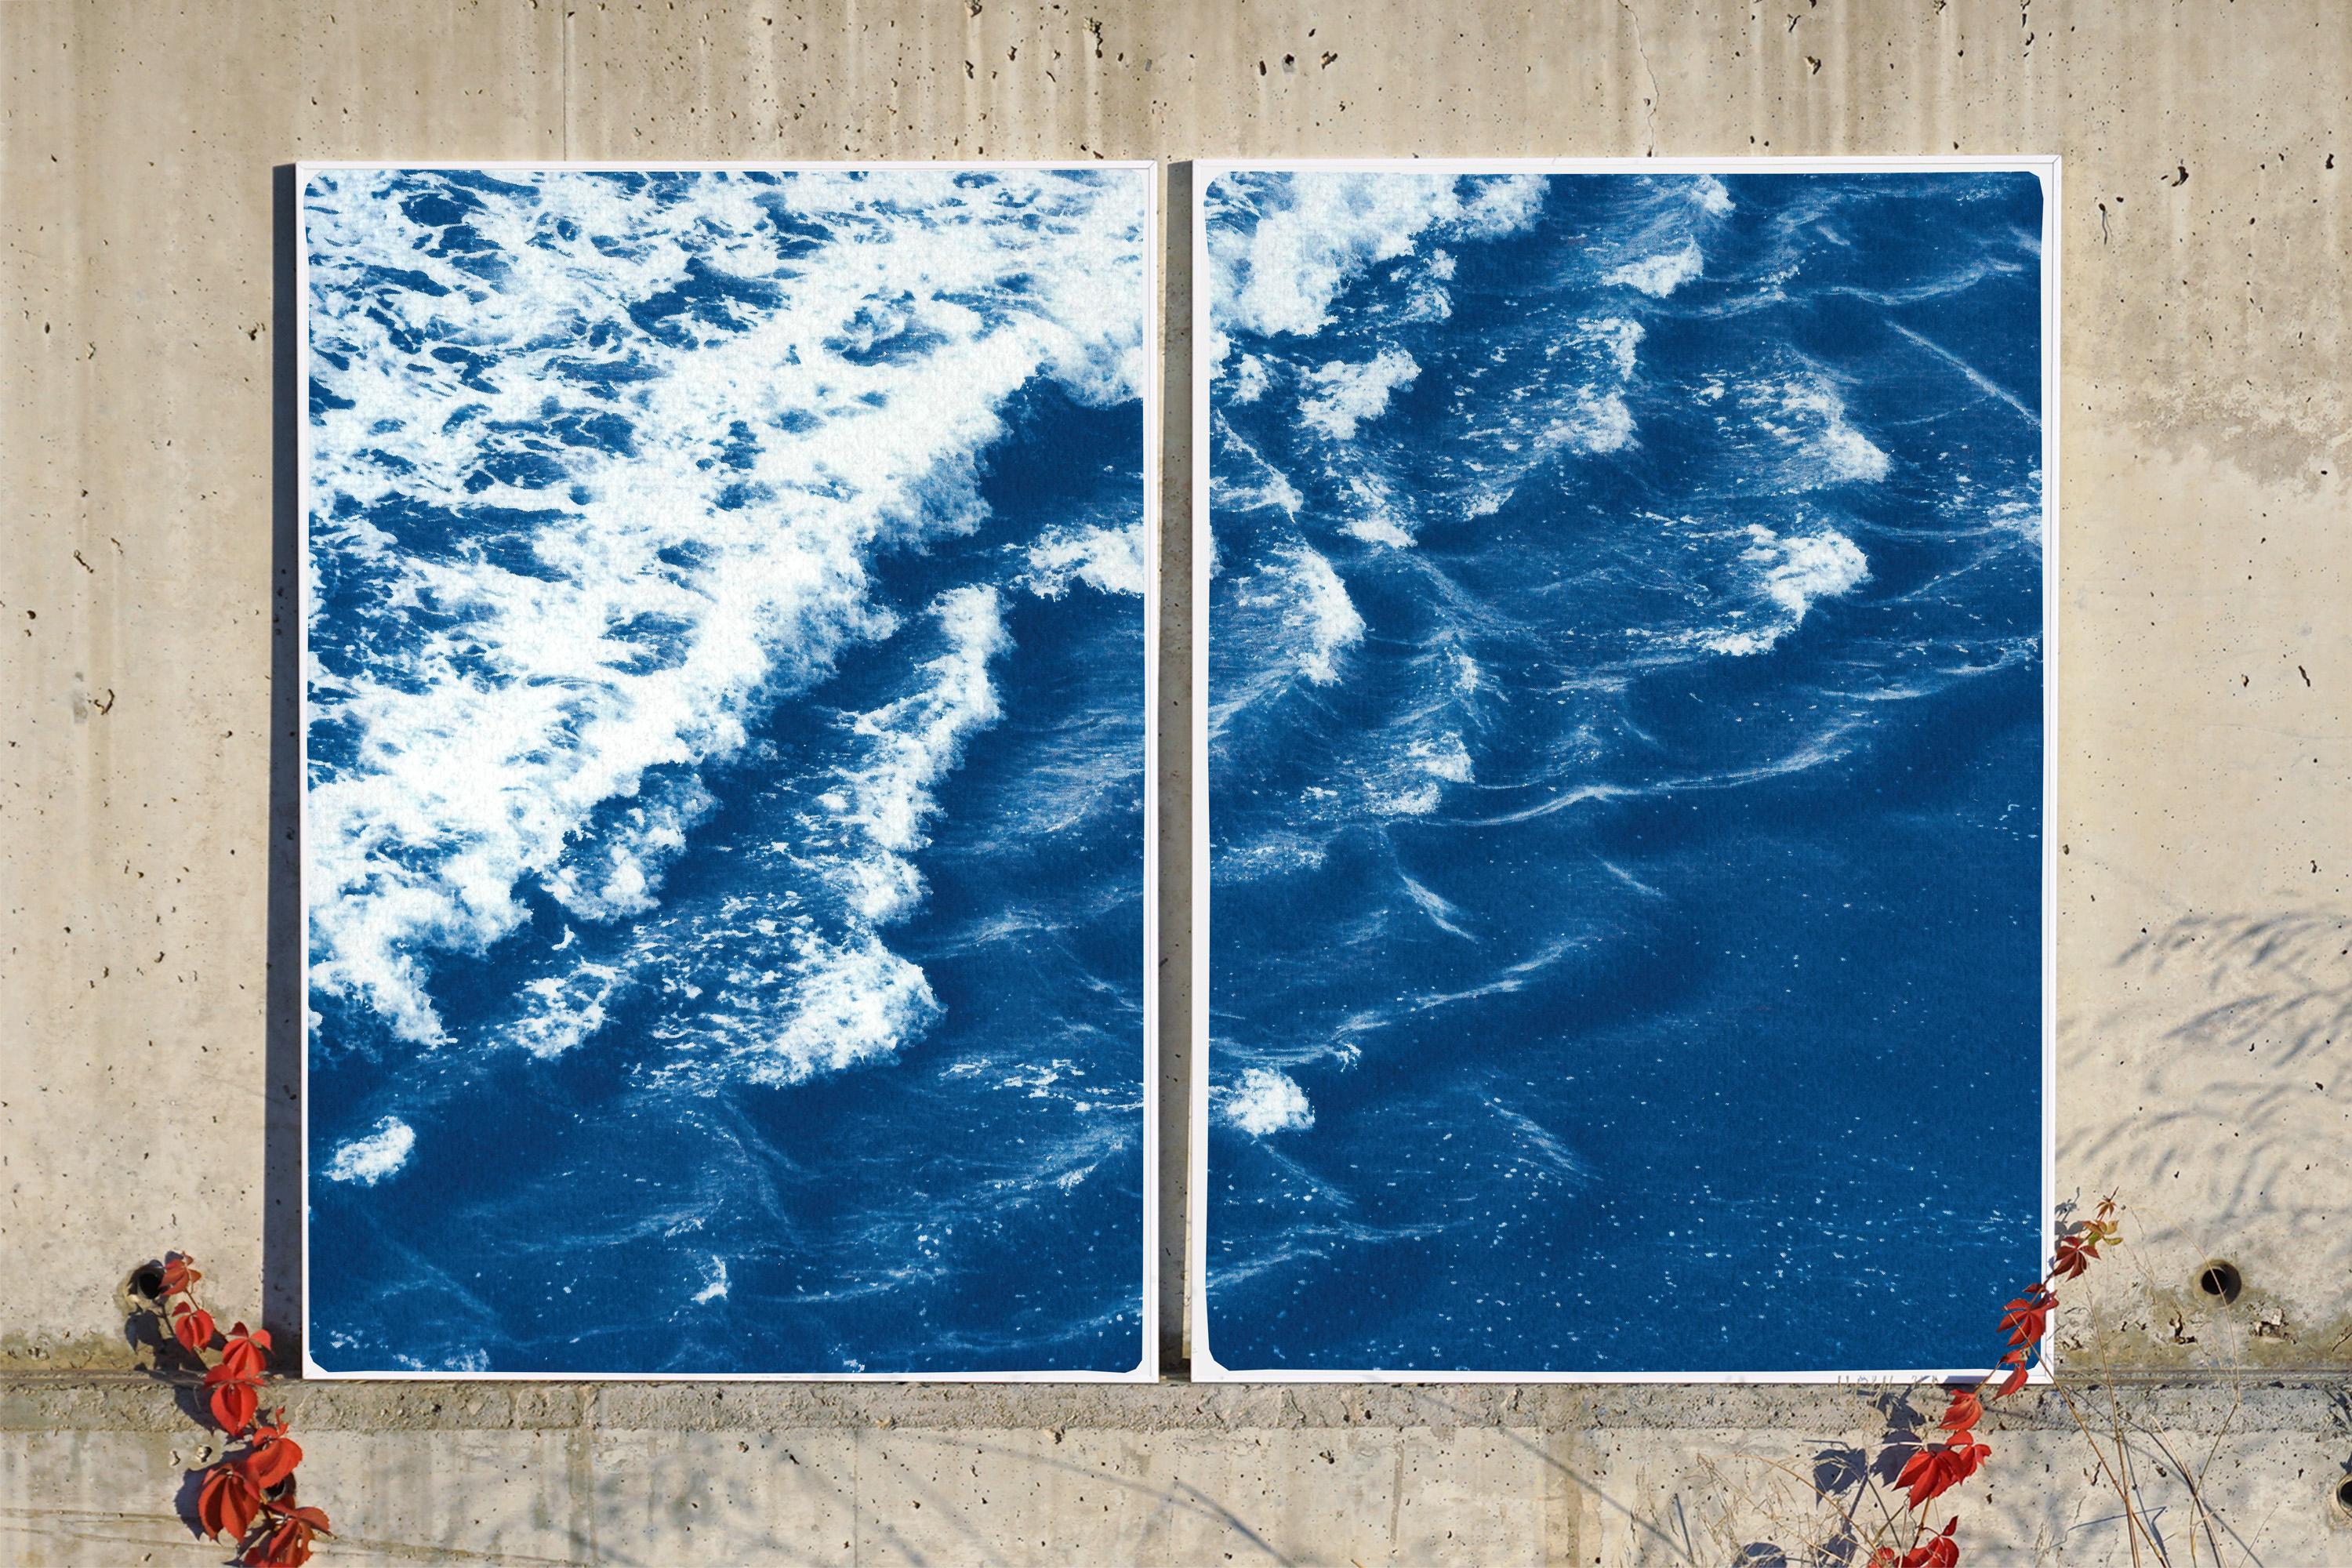 Rolling Waves off Sidney, Seascape Diptych Cyanotype, Australian Coast, Indigo - Blue Landscape Art by Kind of Cyan